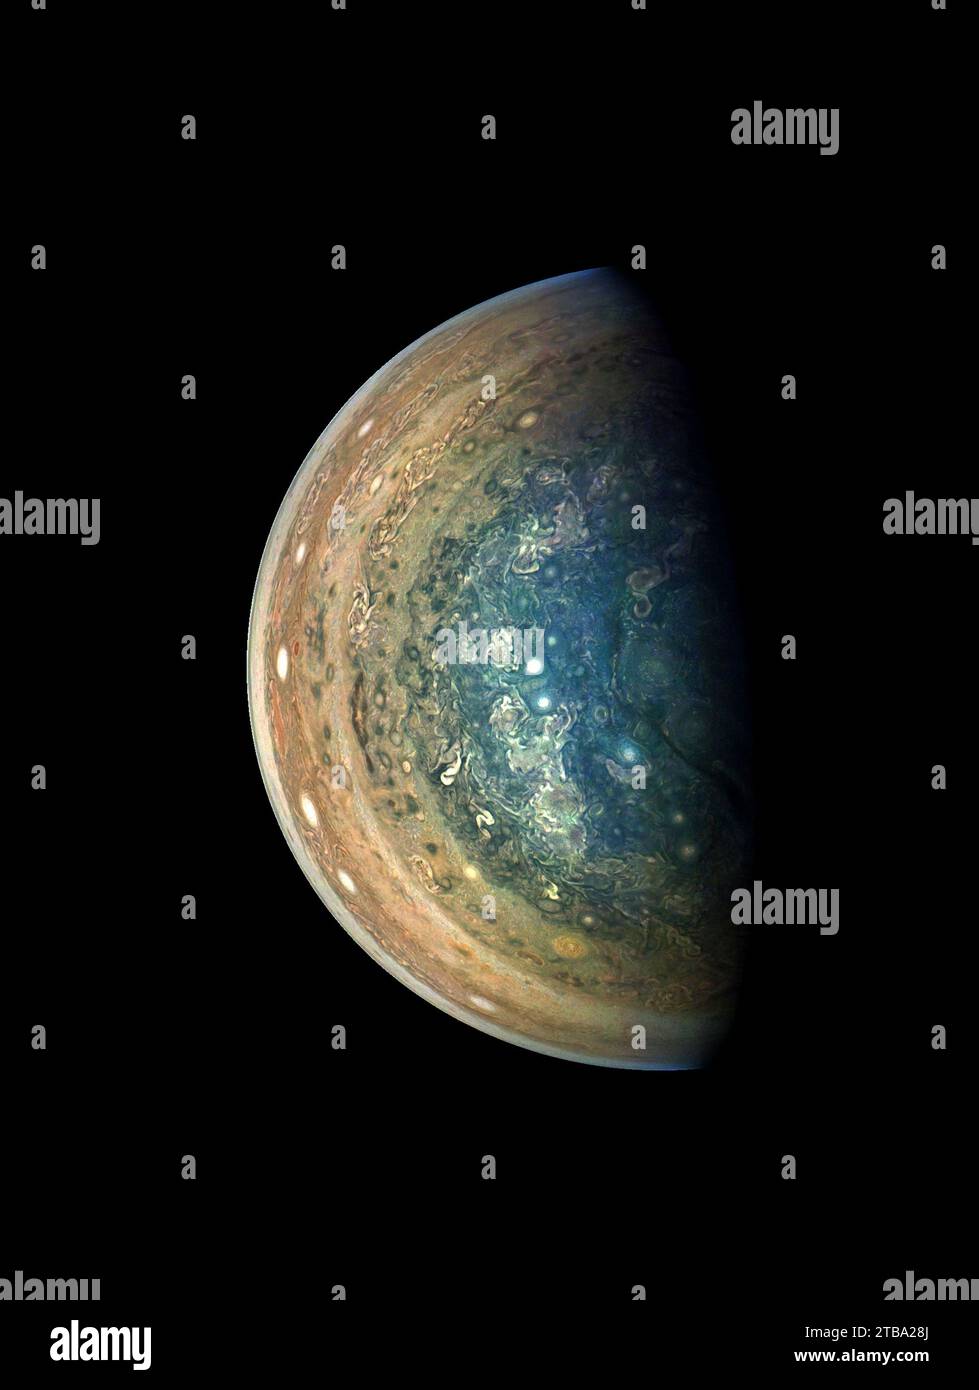 La région polaire sud tourbillonnante de Jupiter, capturée par la sonde Juno lors d'un survol. Banque D'Images